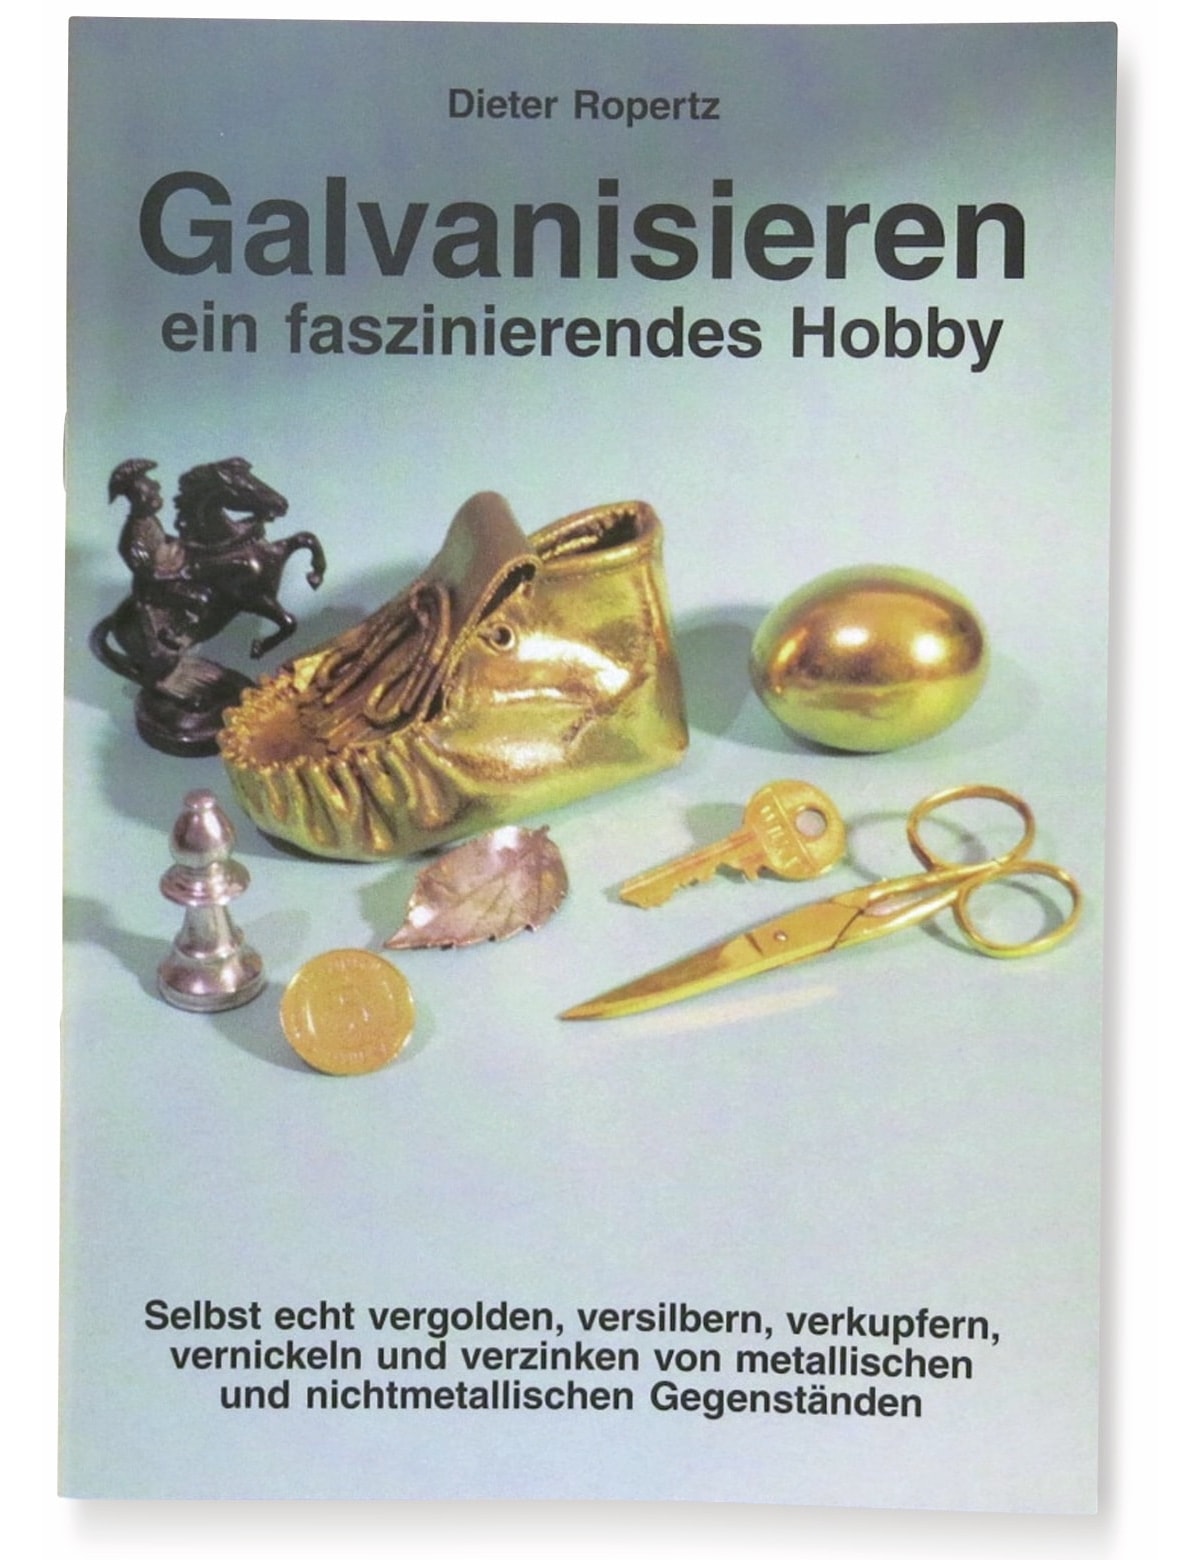 DR. ROPERTZ Broschüre "Galvanisieren"